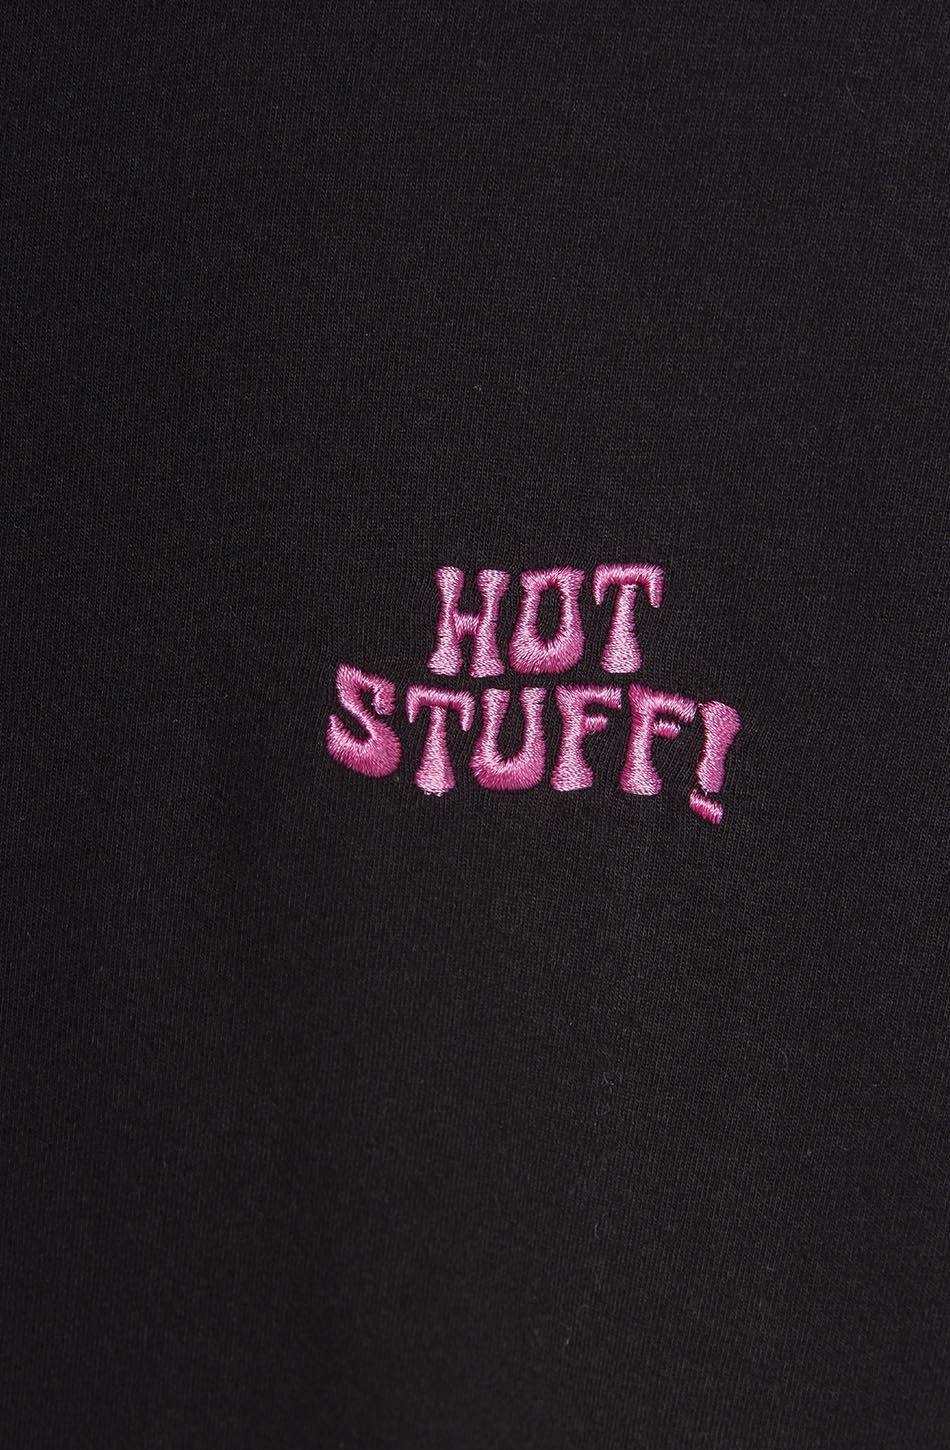 Camiseta Hot Stuff Heart Black